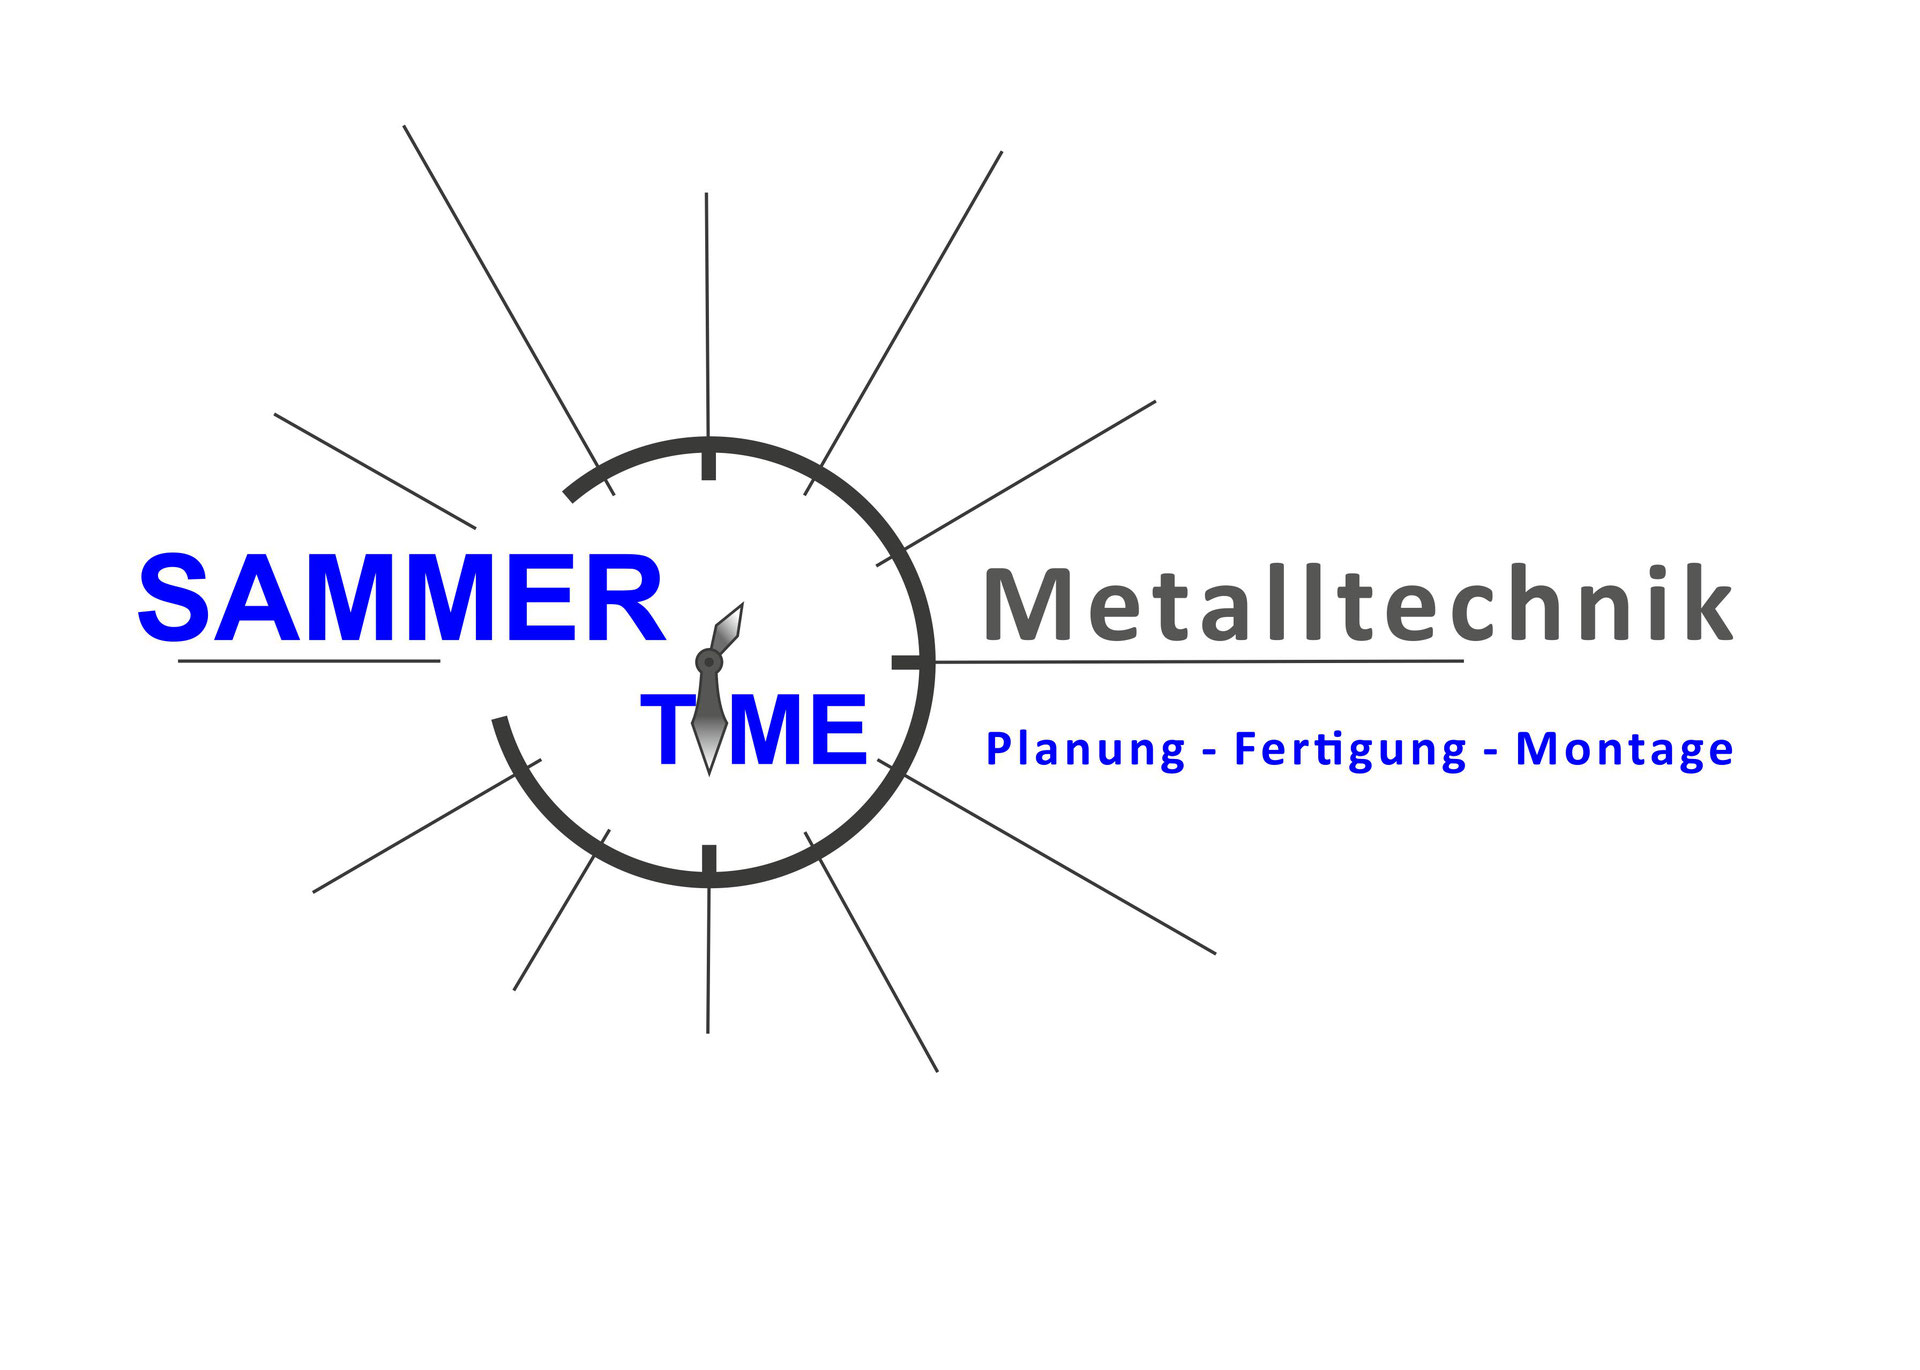 (c) Sammertime-metalltechnik.at